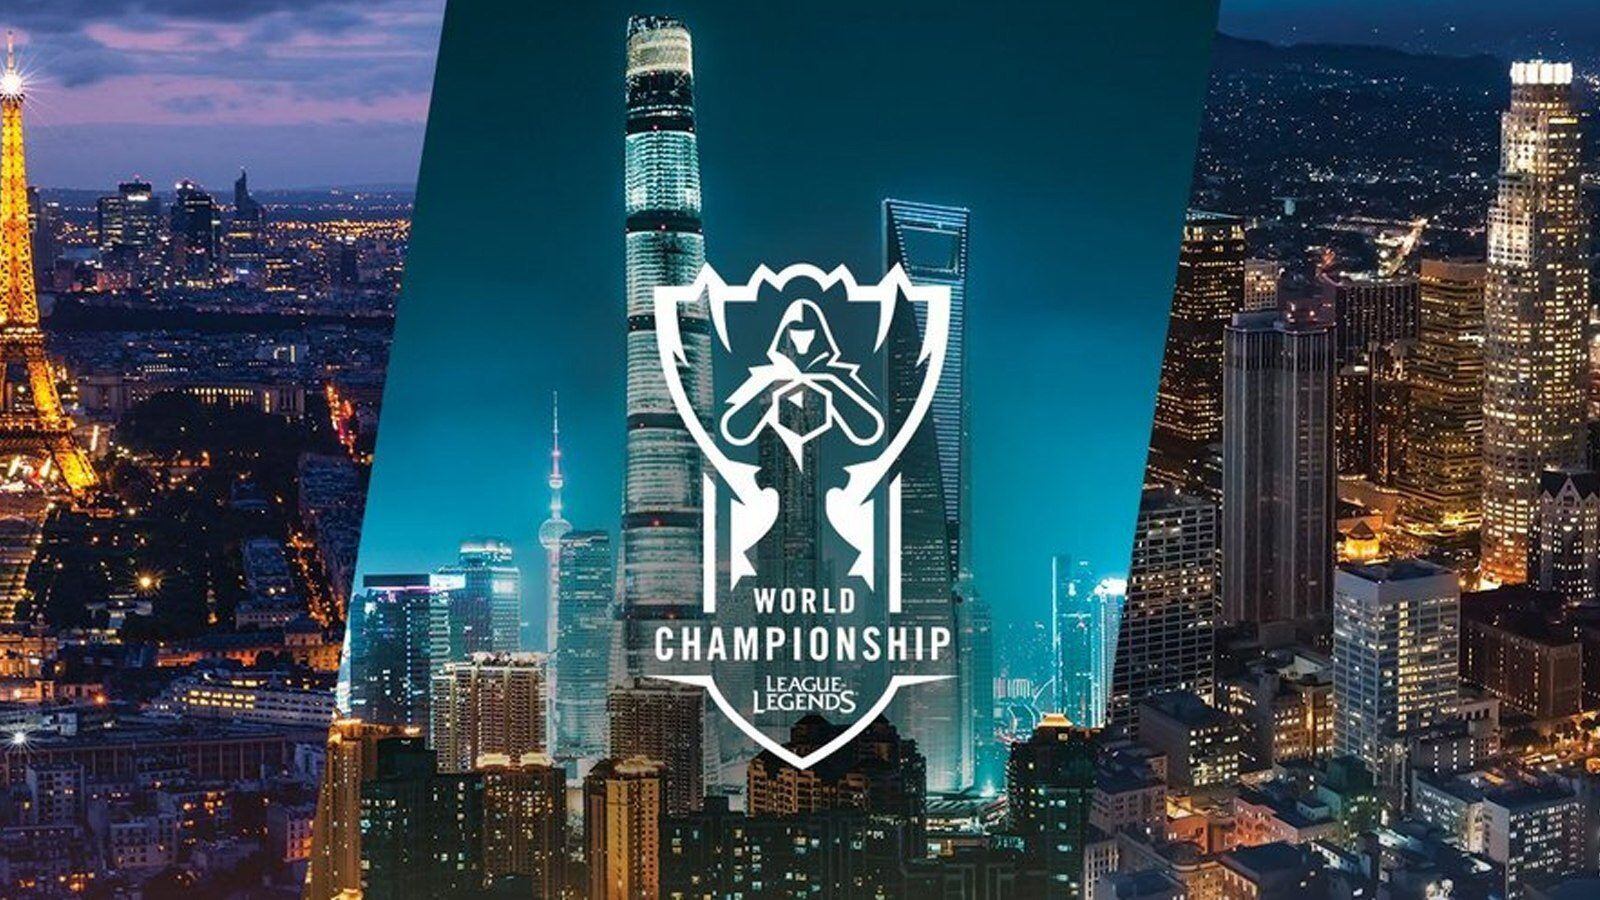 Louis Vuitton Joins Worlds 2019 – League of Legends